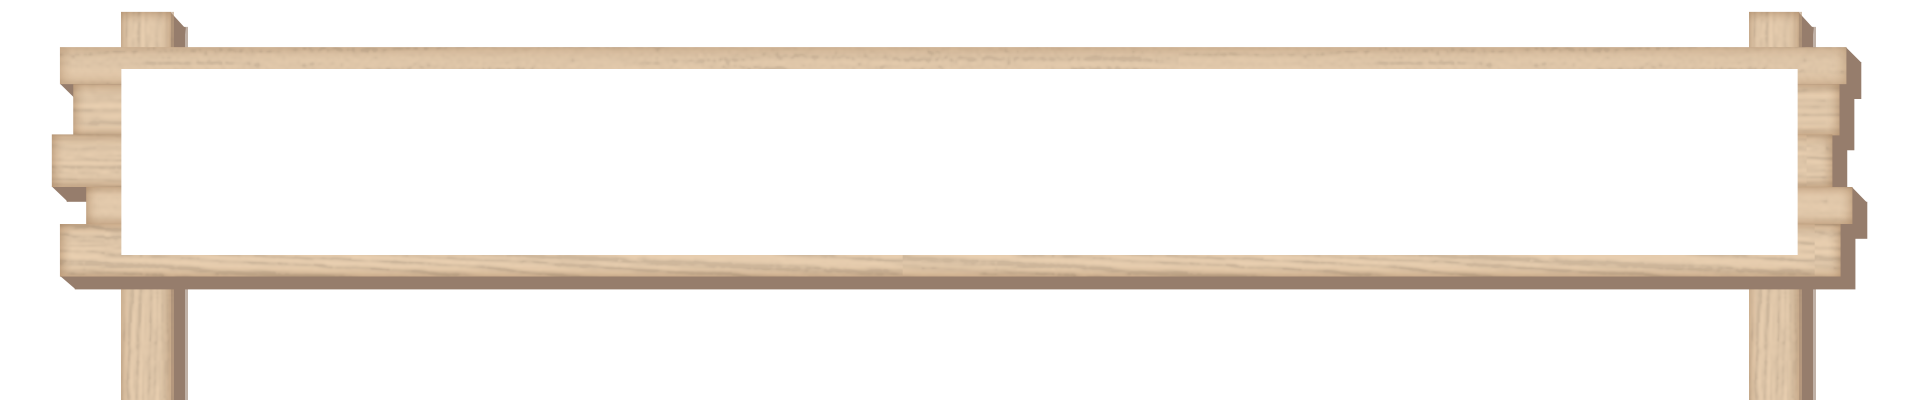 木の看板テロップno 2 白 テロップ サイト